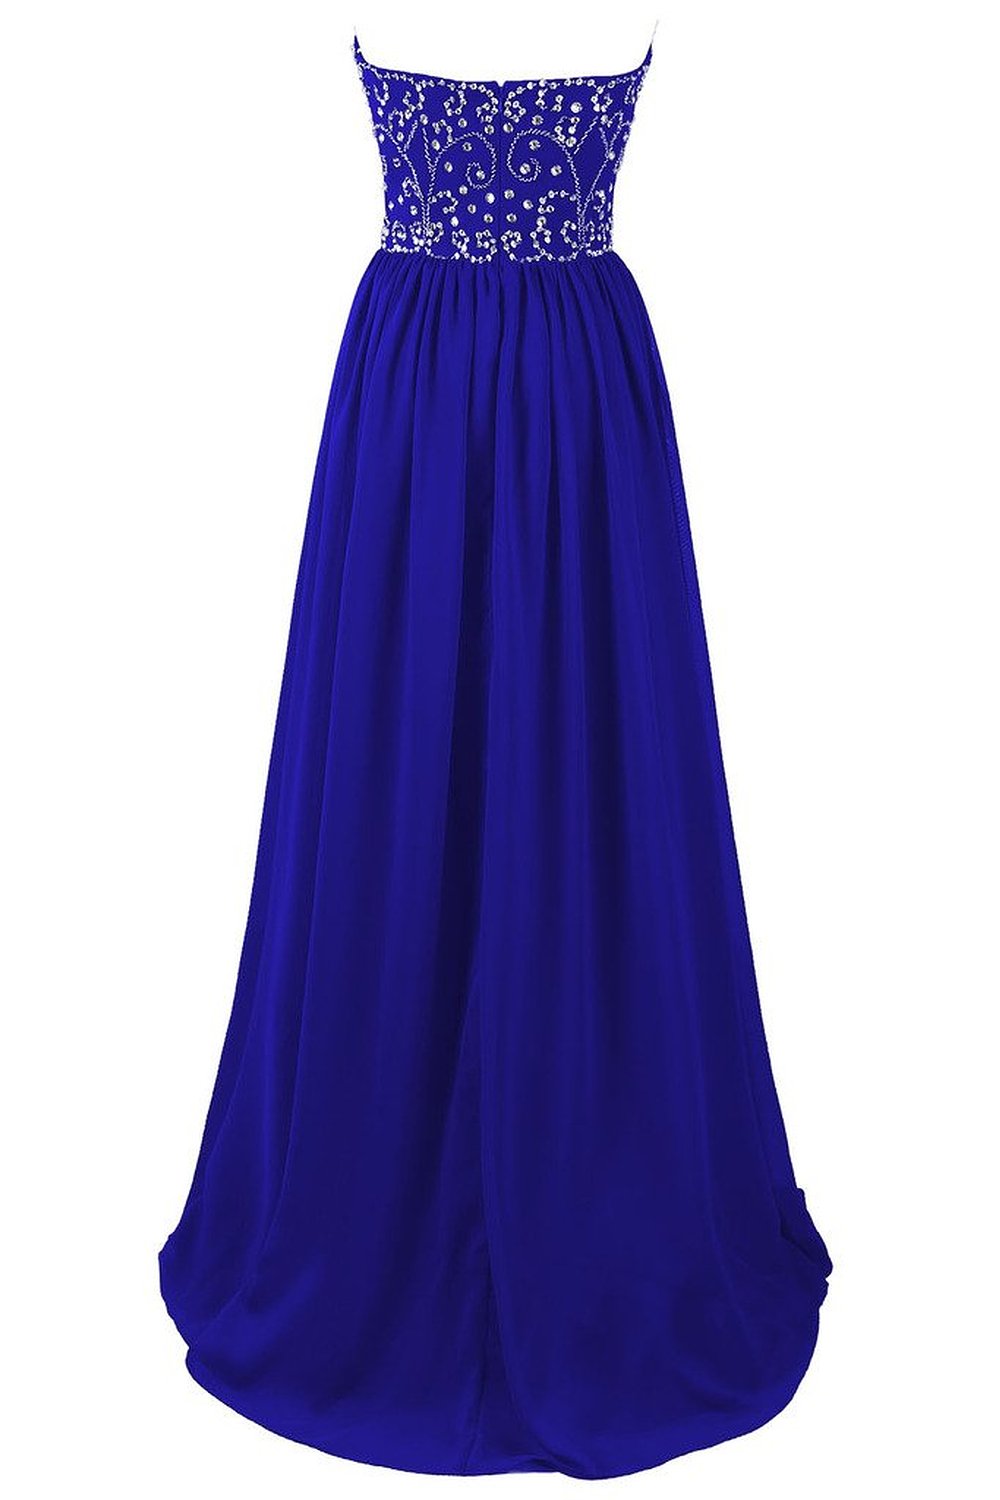 Sleeveless Long Royal Blue Chiffon Prom Dress With Beads on Luulla